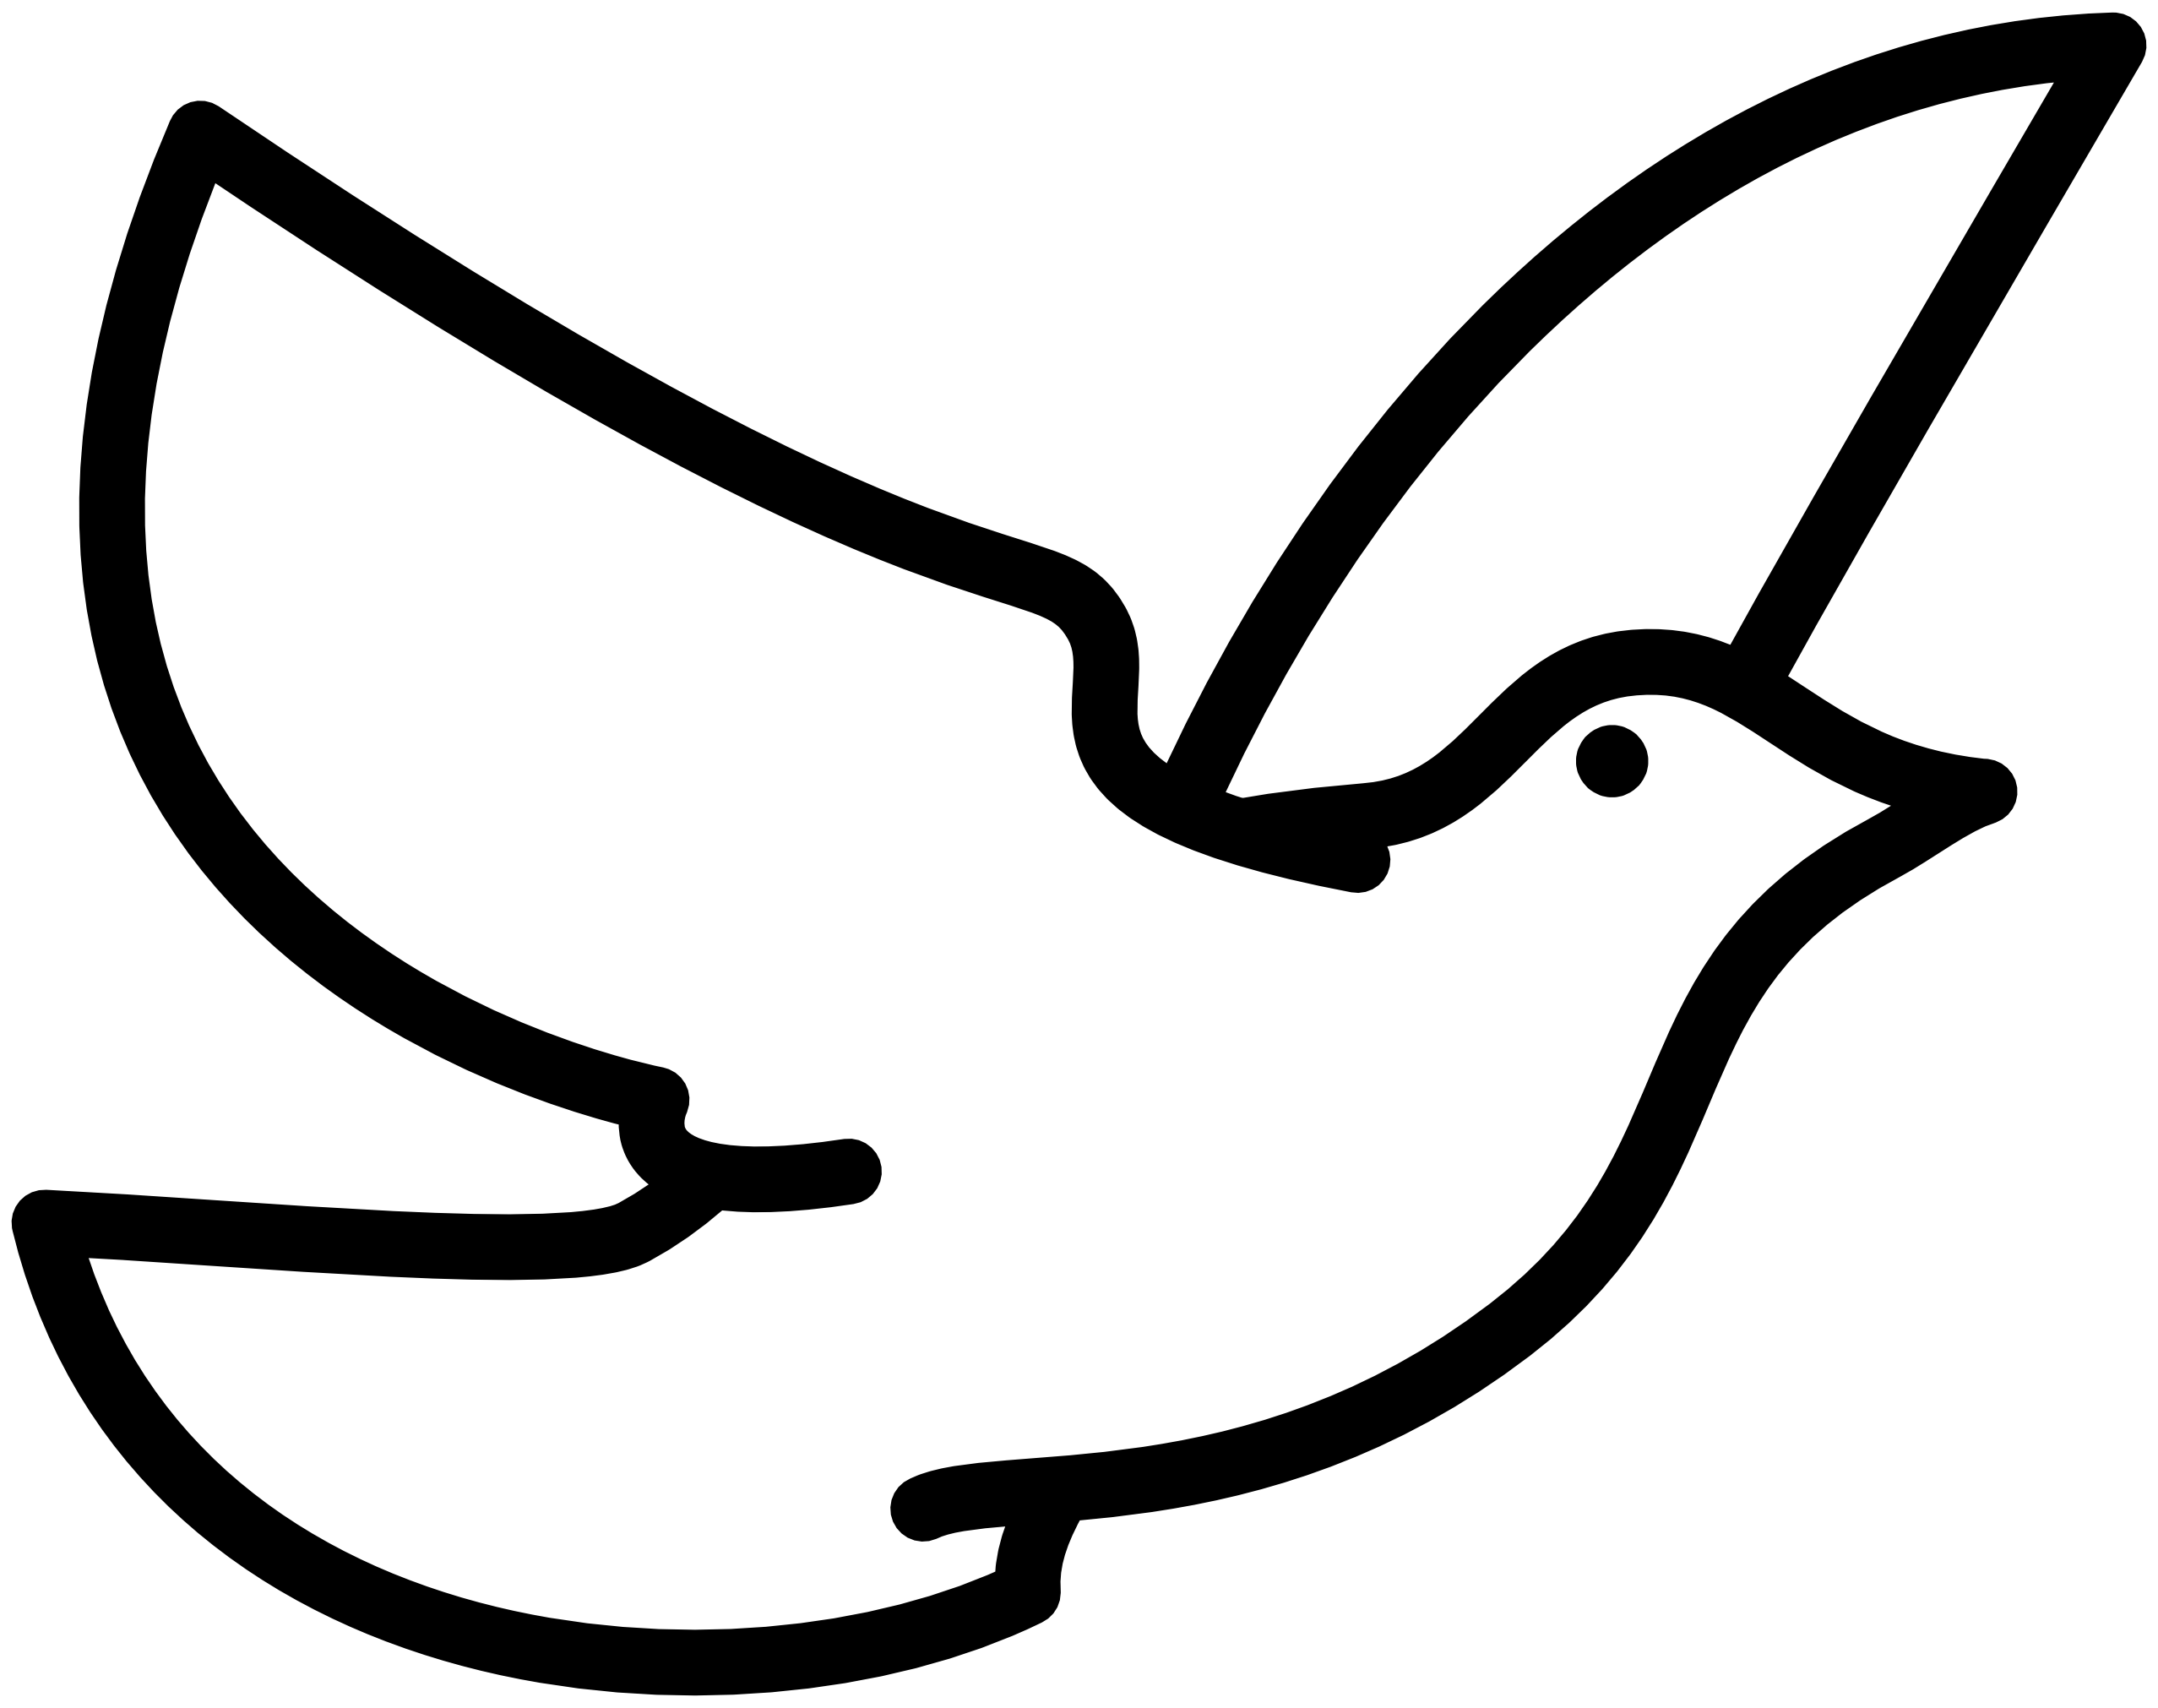 Black and White Dove Logo - Winter White Dove Clipart